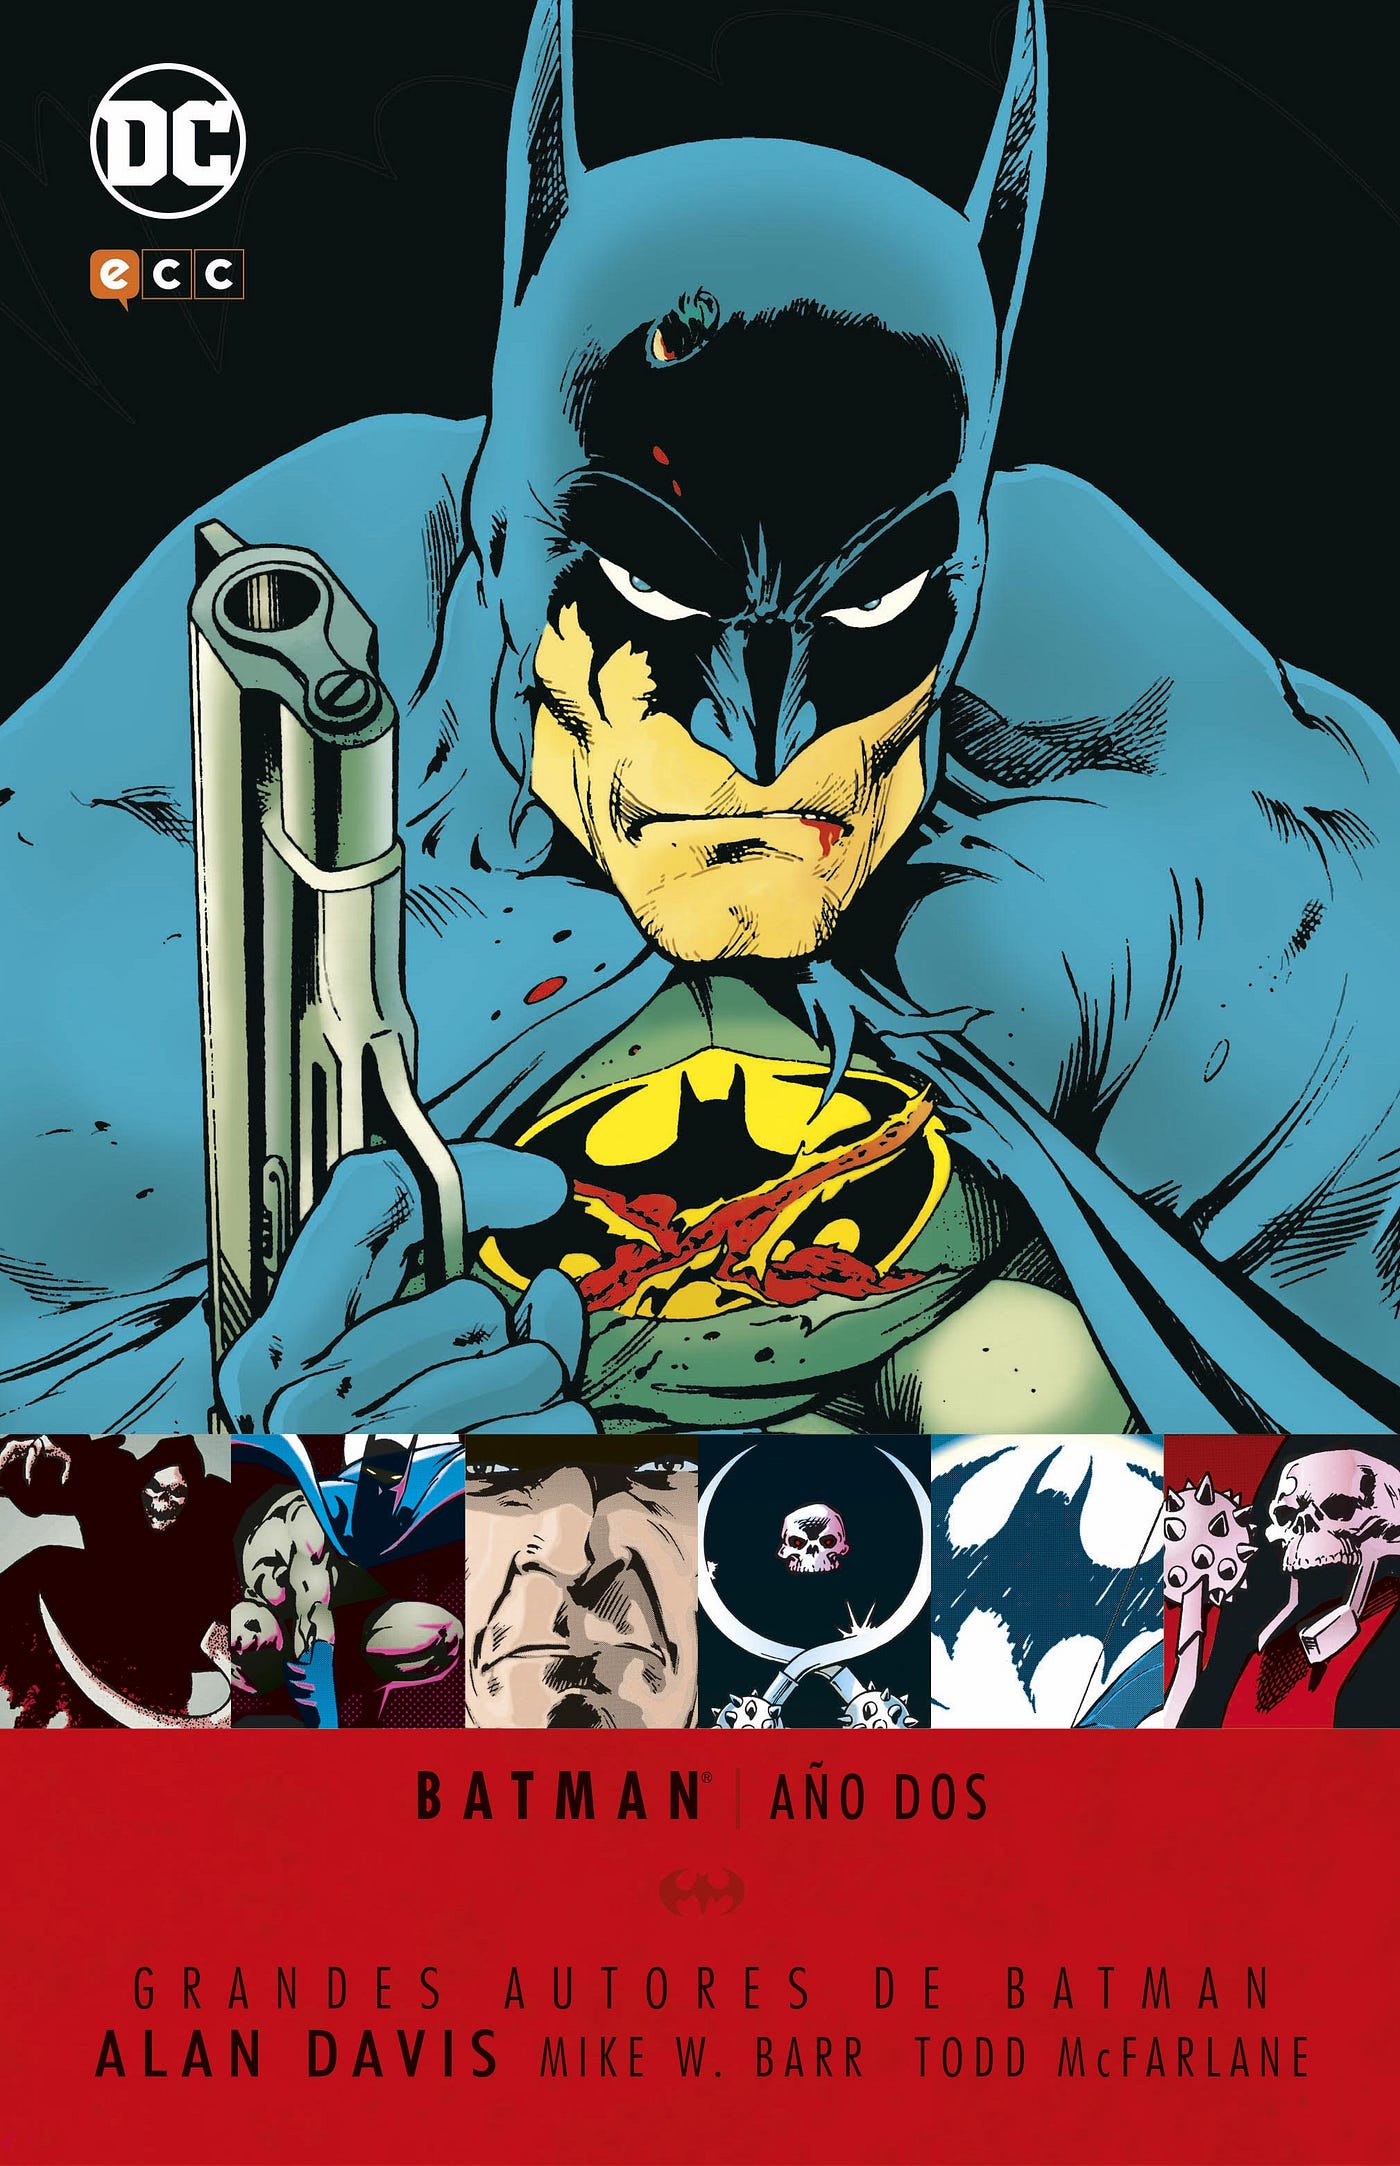 Cinco historias de Batman que tienes que leer (y no son las típicas) | by  Ignacio Pillonetto | Papel en Blanco